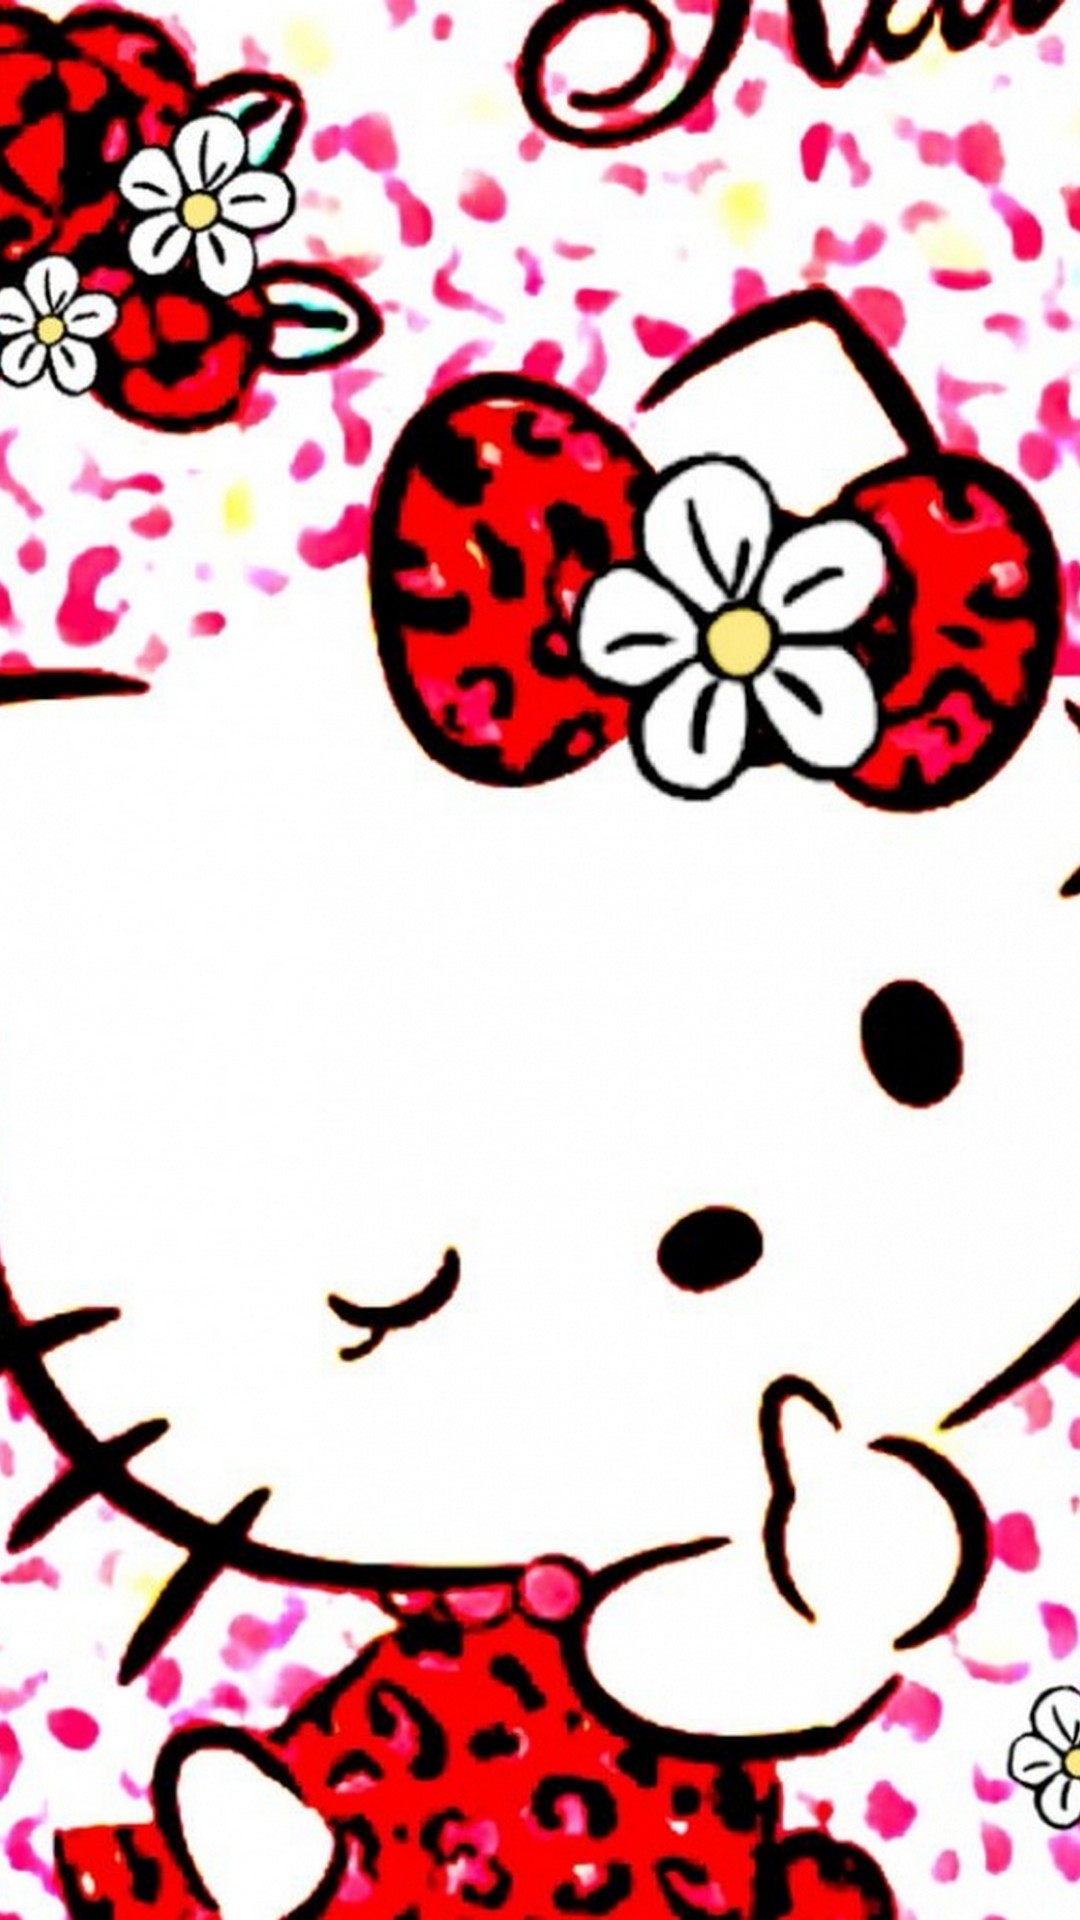 Với những tín đồ yêu thích Hello Kitty, họ không thể bỏ lỡ bộ sưu tập những hình nền Hello Kitty dễ thương này! Hãy tận hưởng sự ngọt ngào và chiêm ngưỡng hình ảnh đáng yêu của em bé mèo trên màn hình máy tính của bạn với hình nền Hello Kitty!